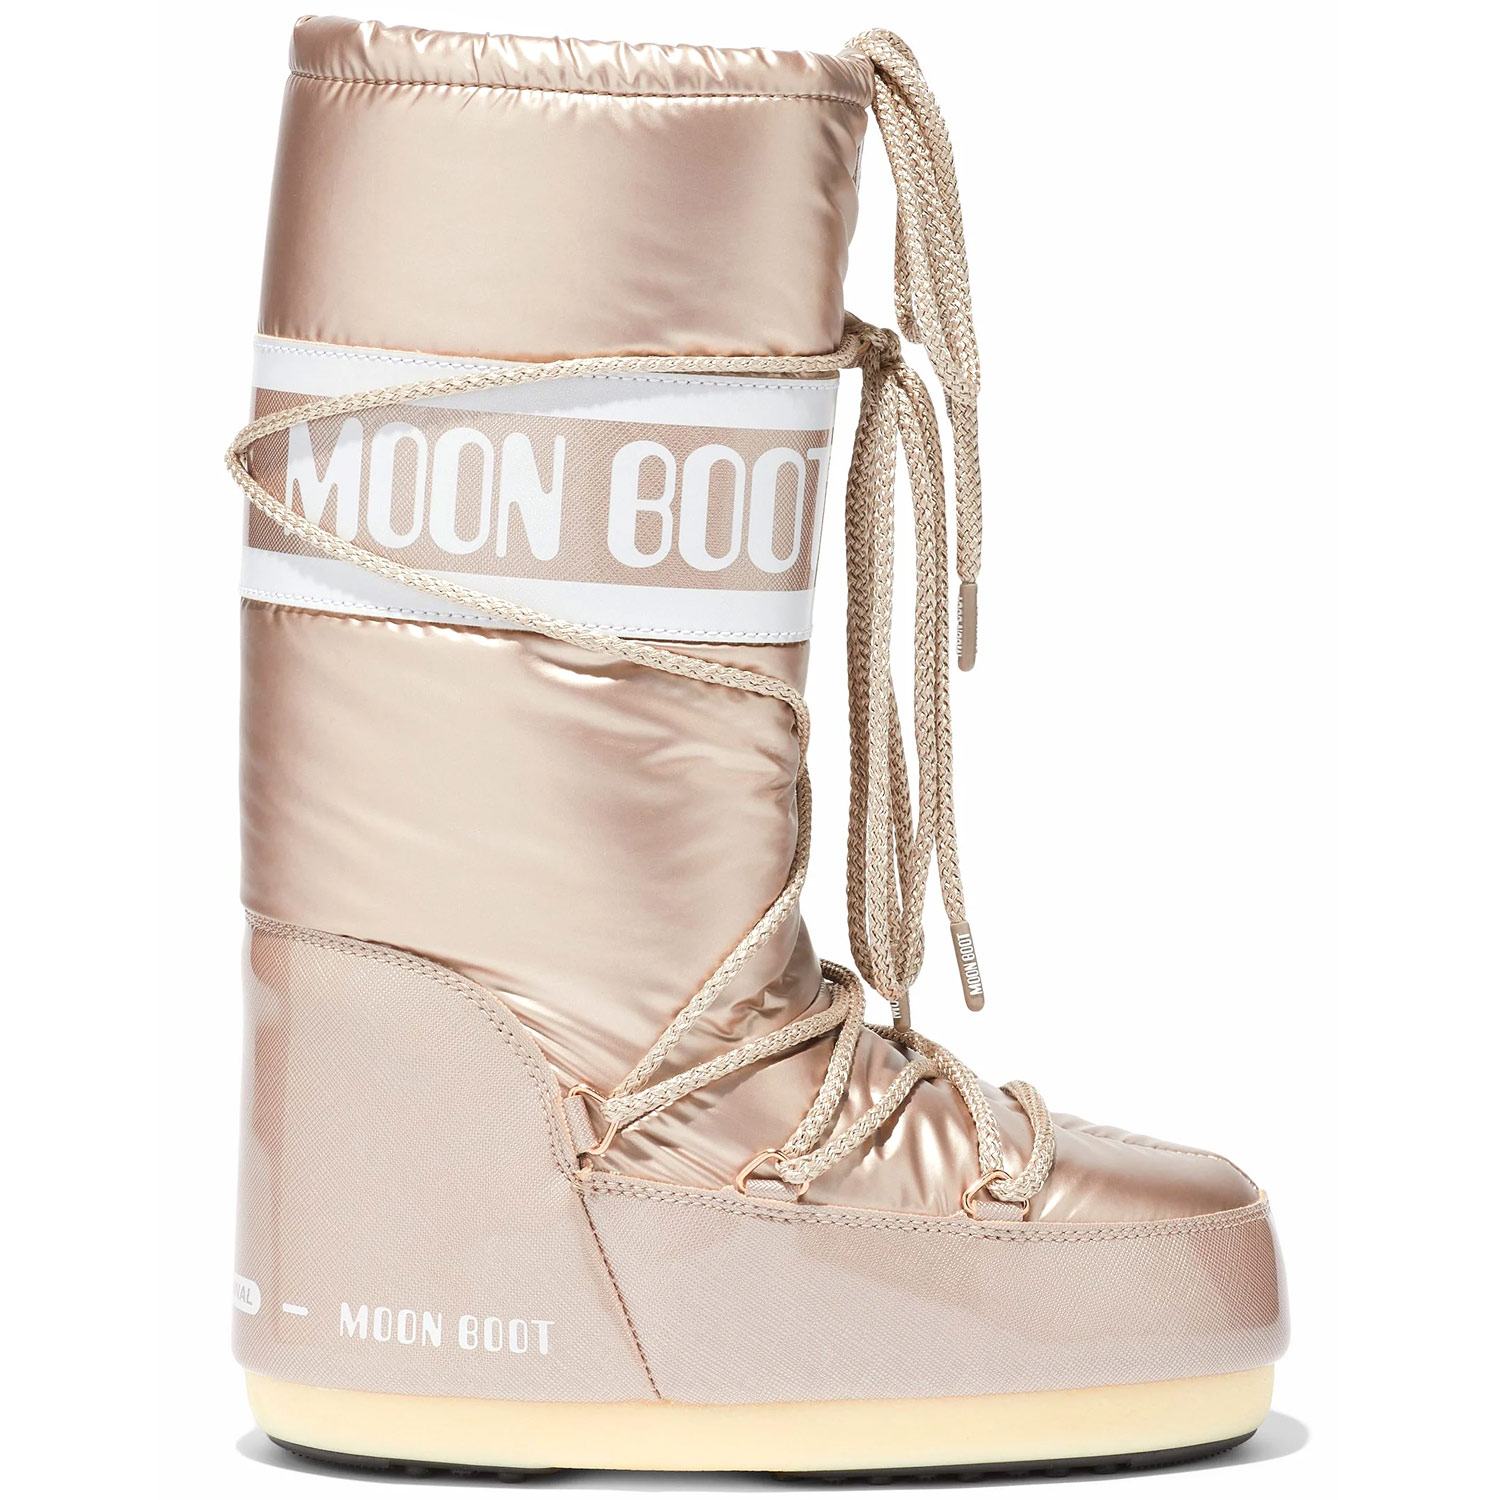 Мун буты. Moon Boot. Мун бут. Moon Boot коричневые. Мунбутс.